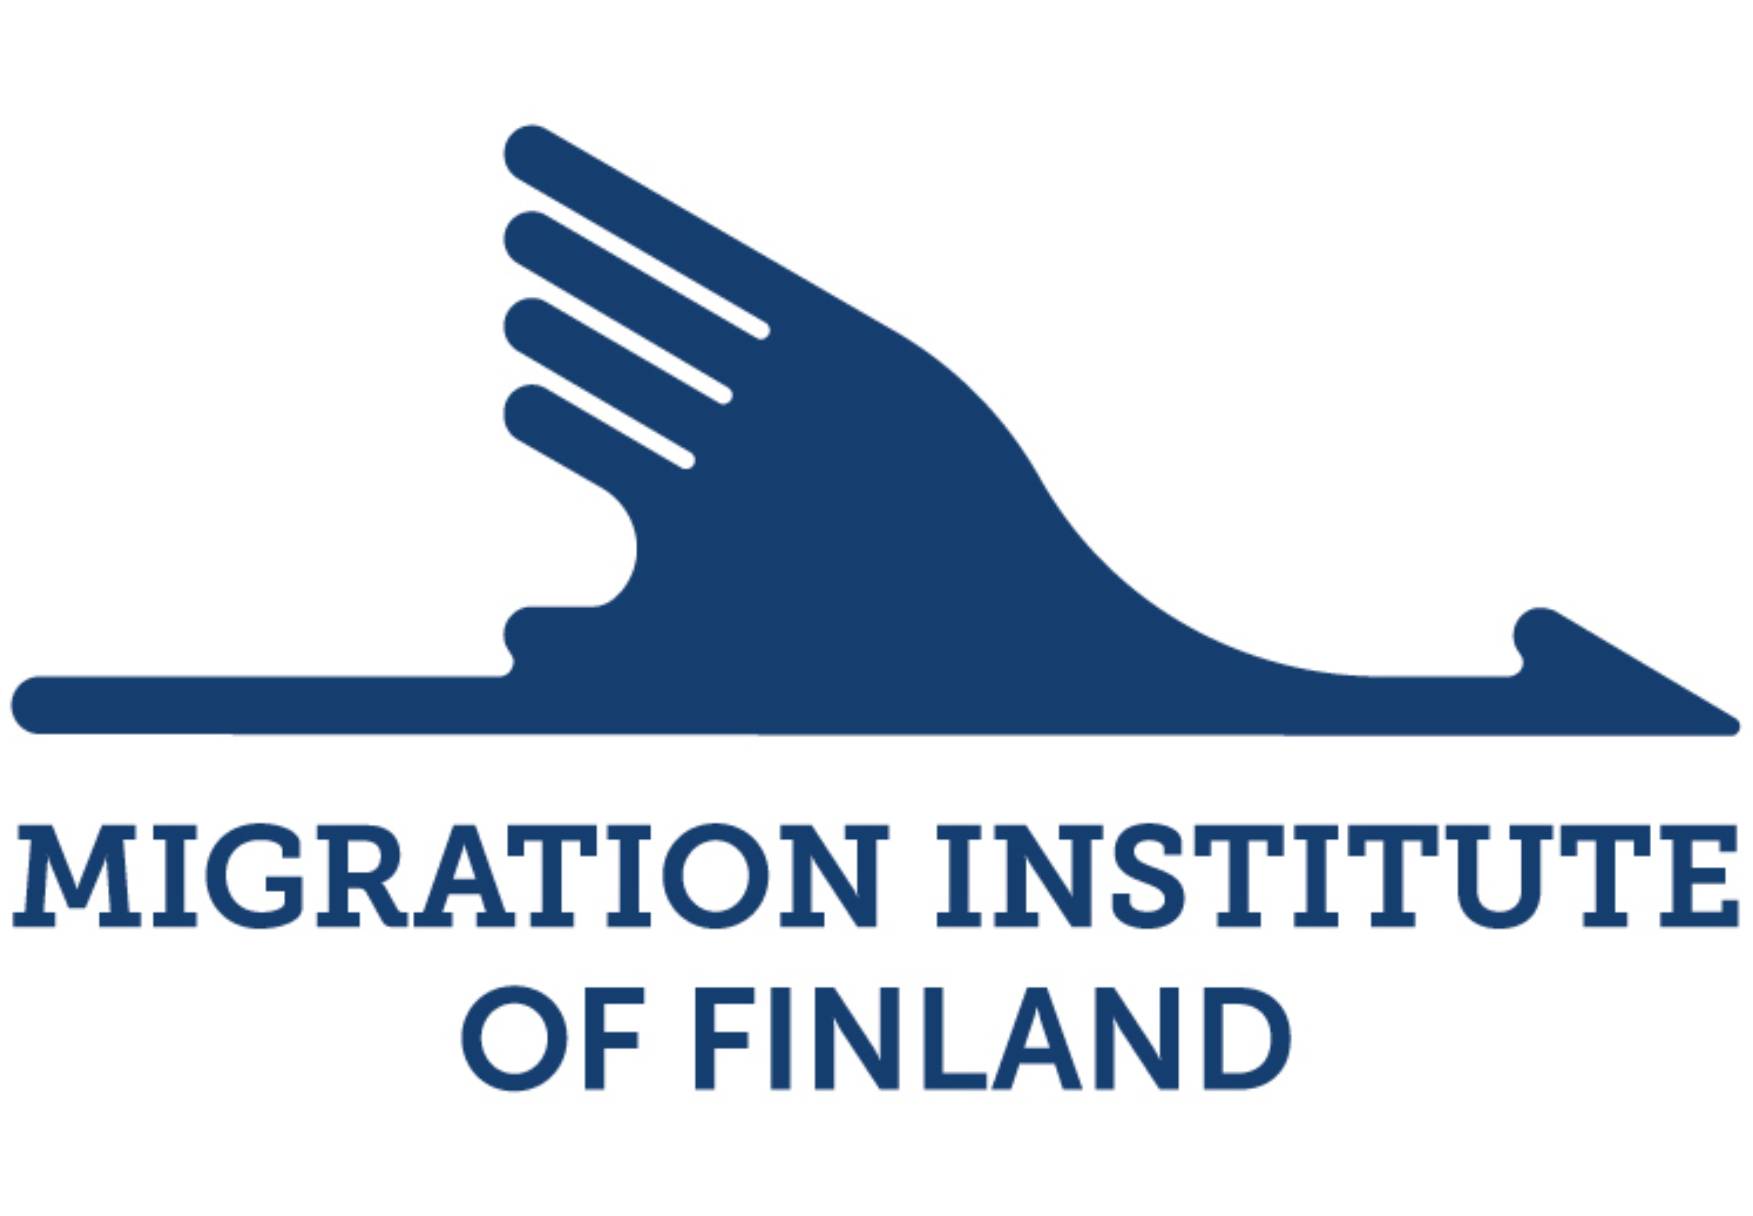 Siirtolaisuusinstituutti logo